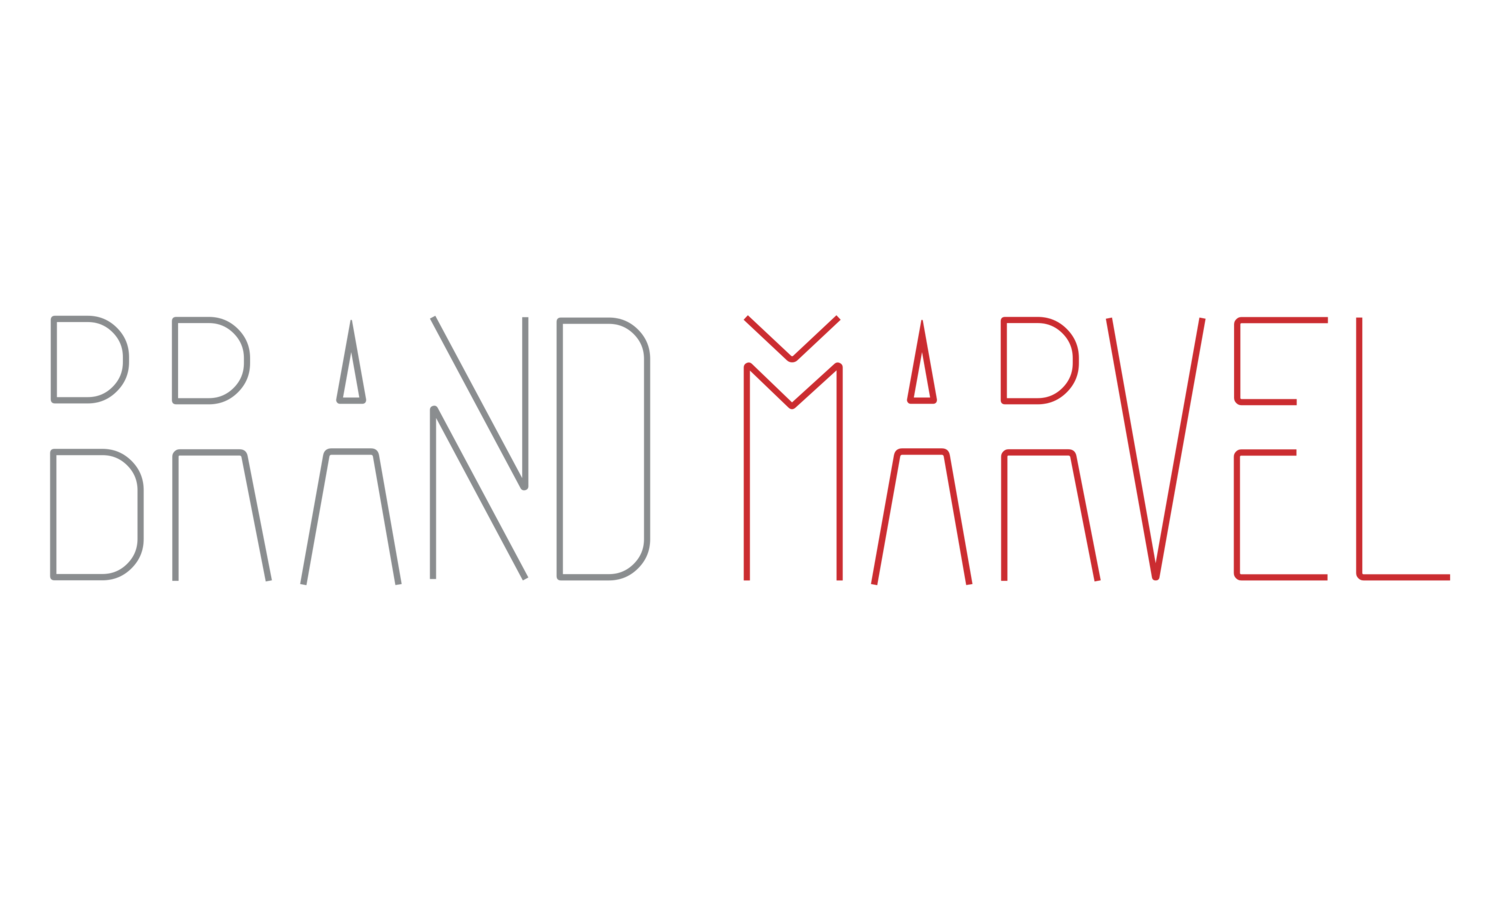 Brand Marvel